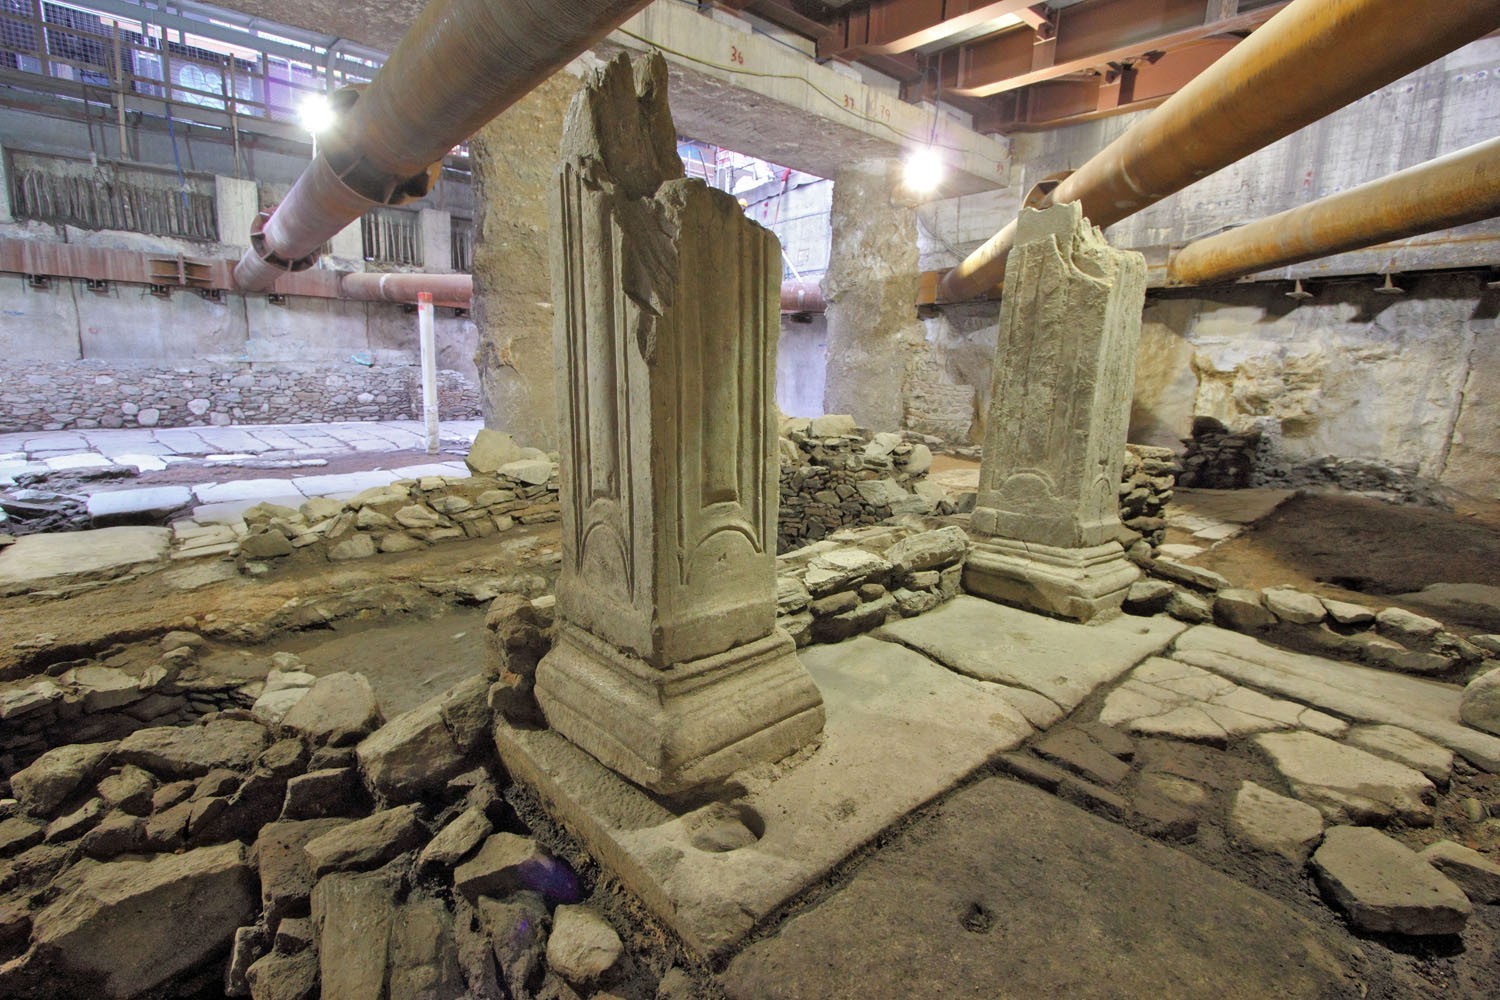 Η πορεία της Θεσσαλονίκης στην ιστορία: 130.000 αρχαία αντικείμενα αποκαλύπτουν το παρελθόν της πόλης [εντυπωσιακές εικόνες]